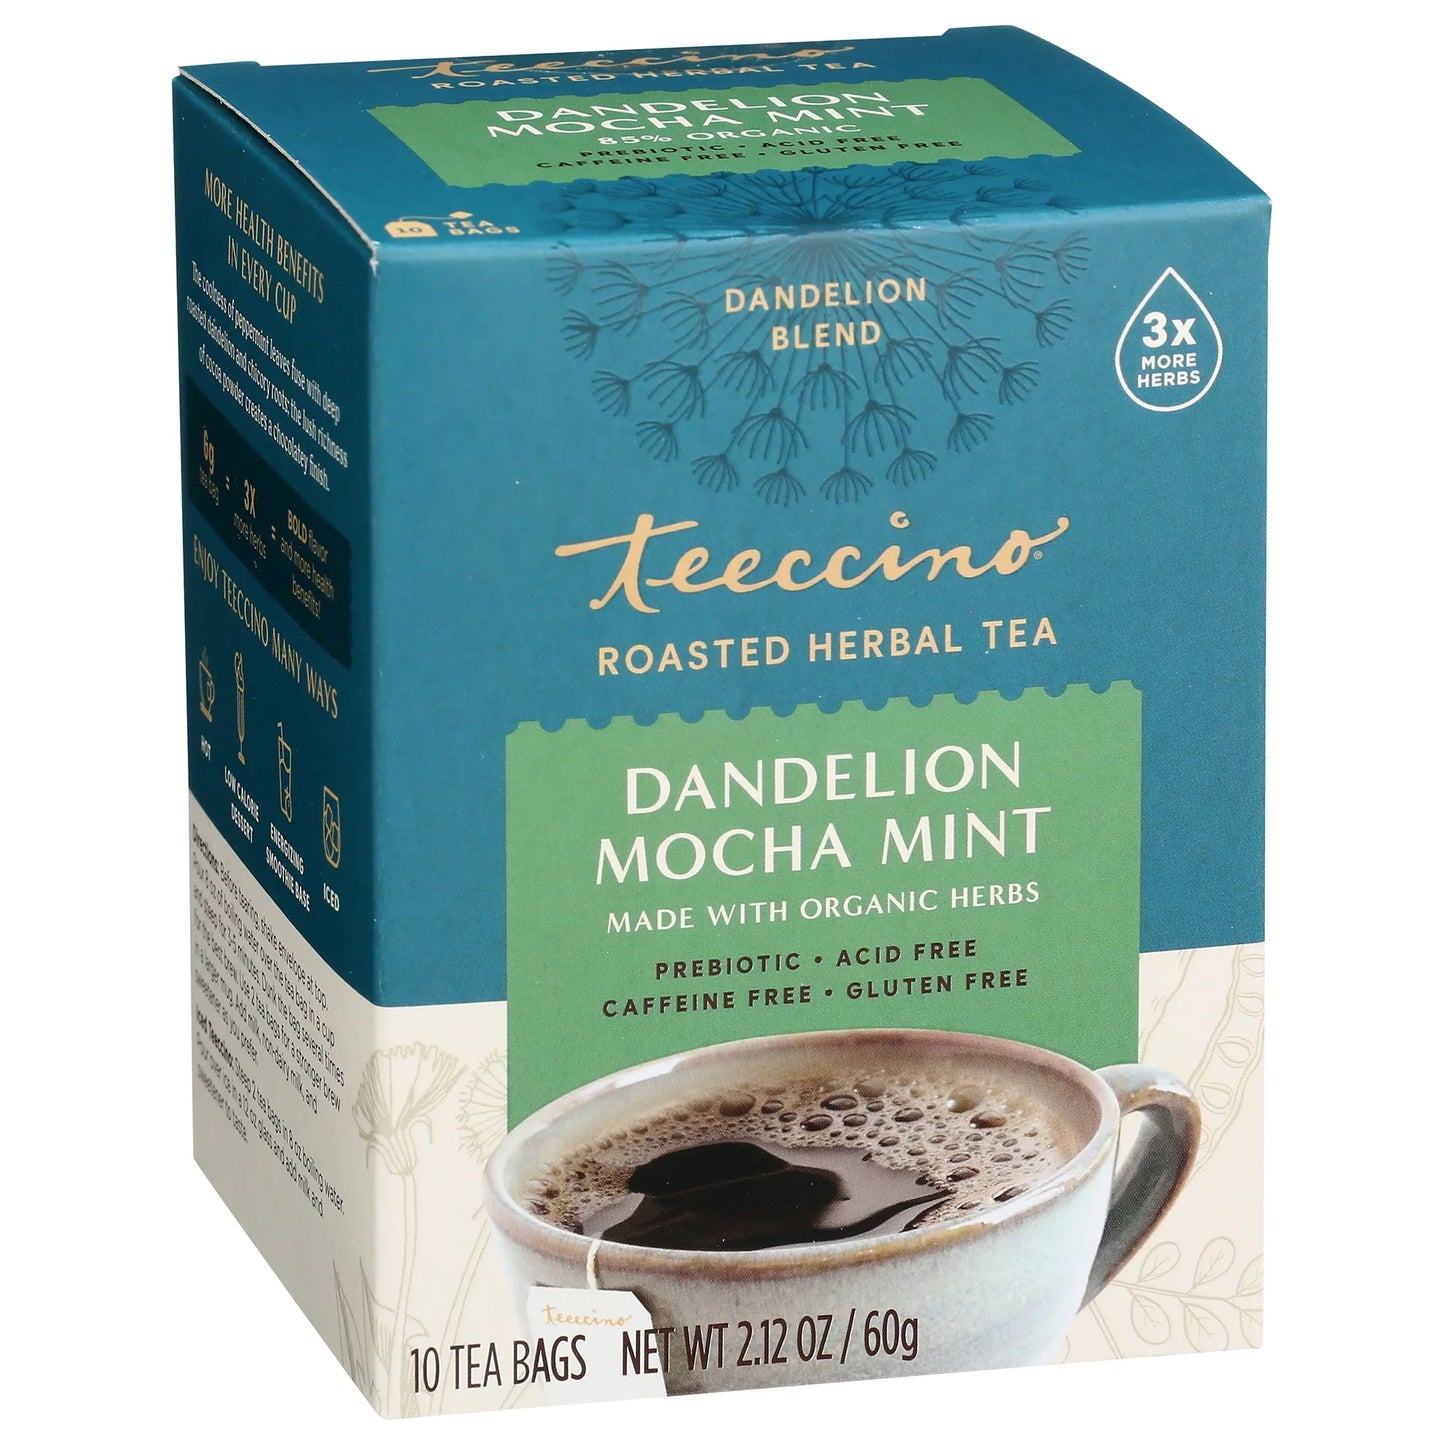 Dandelion Mocha Mint Roasted Herbal Tea